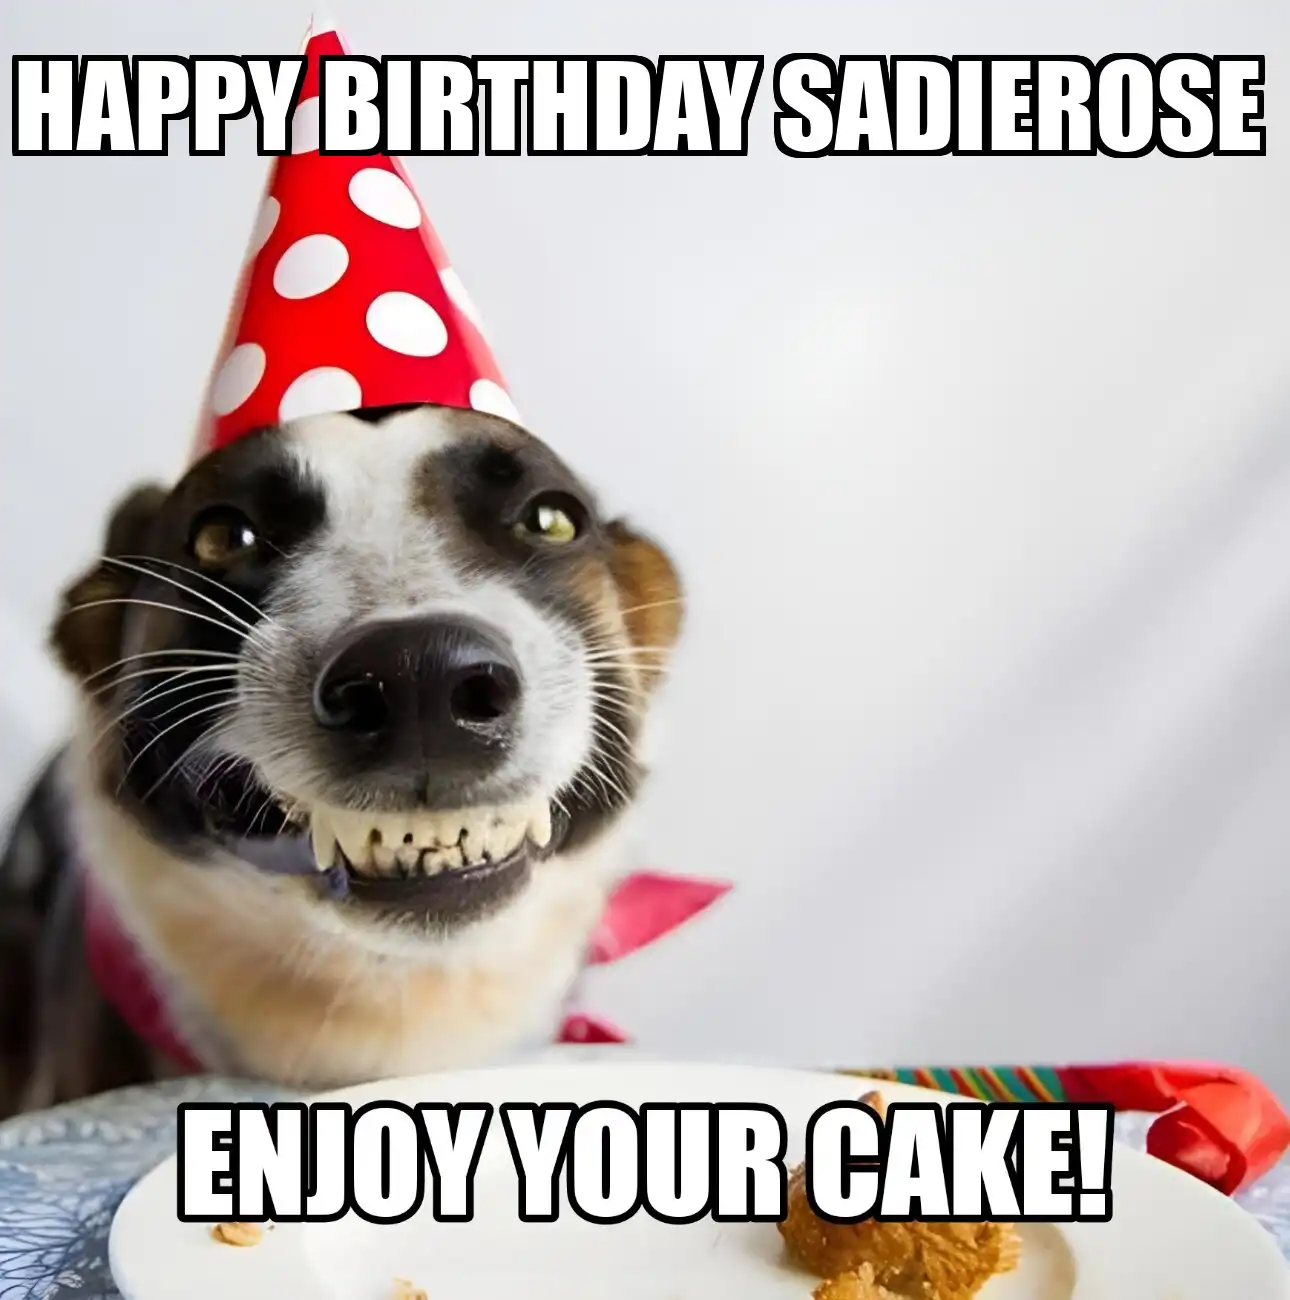 Happy Birthday Sadierose Enjoy Your Cake Dog Meme